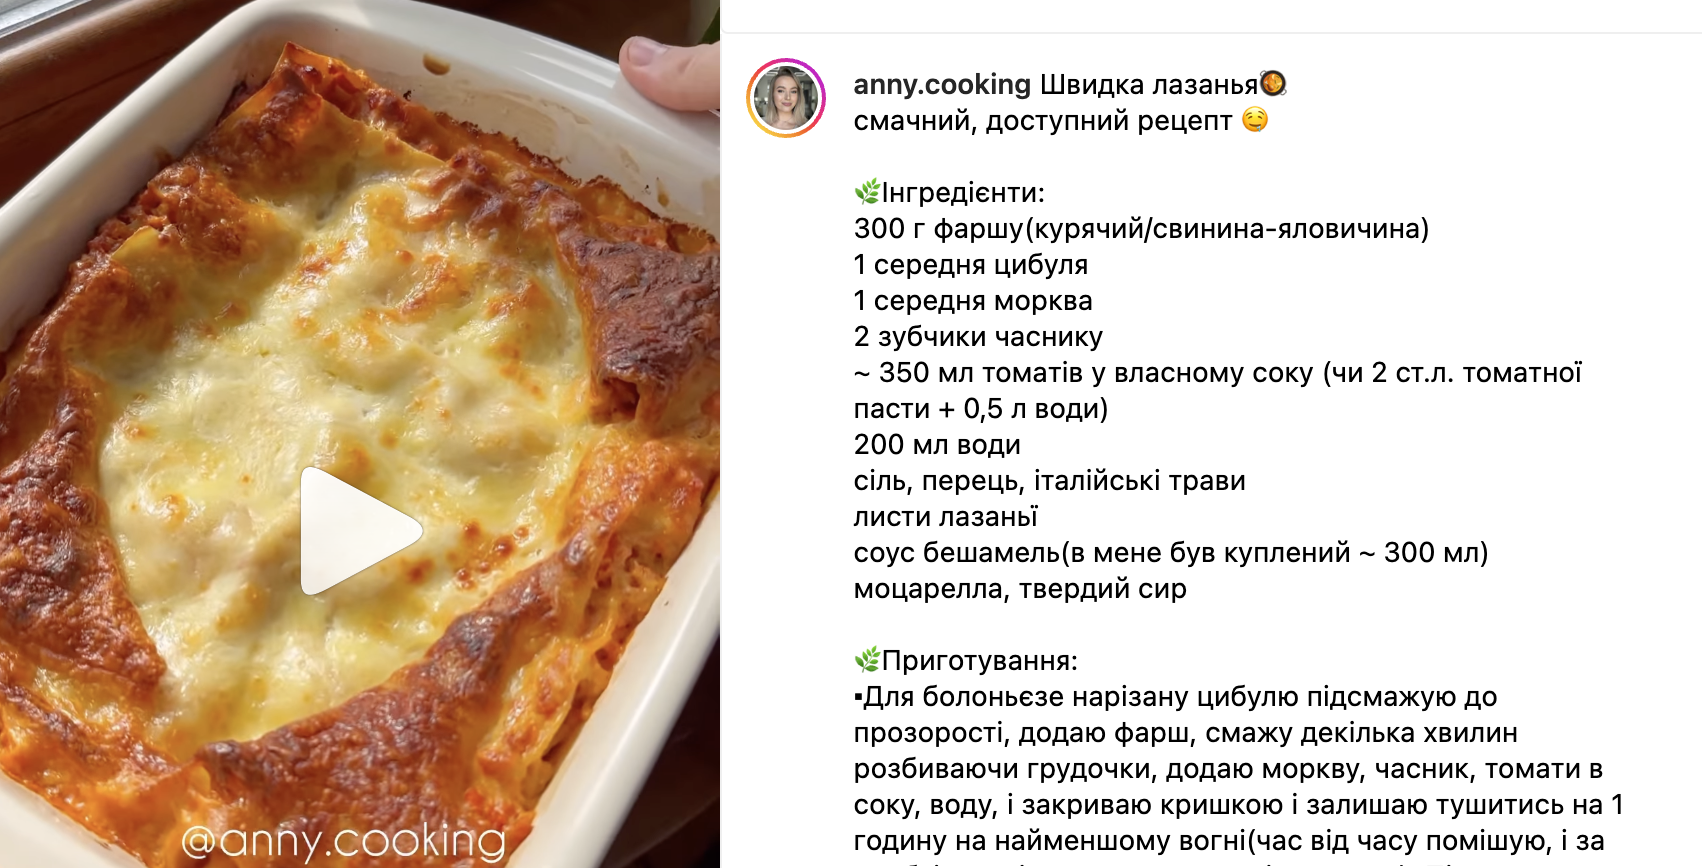 Recipe for lasagne